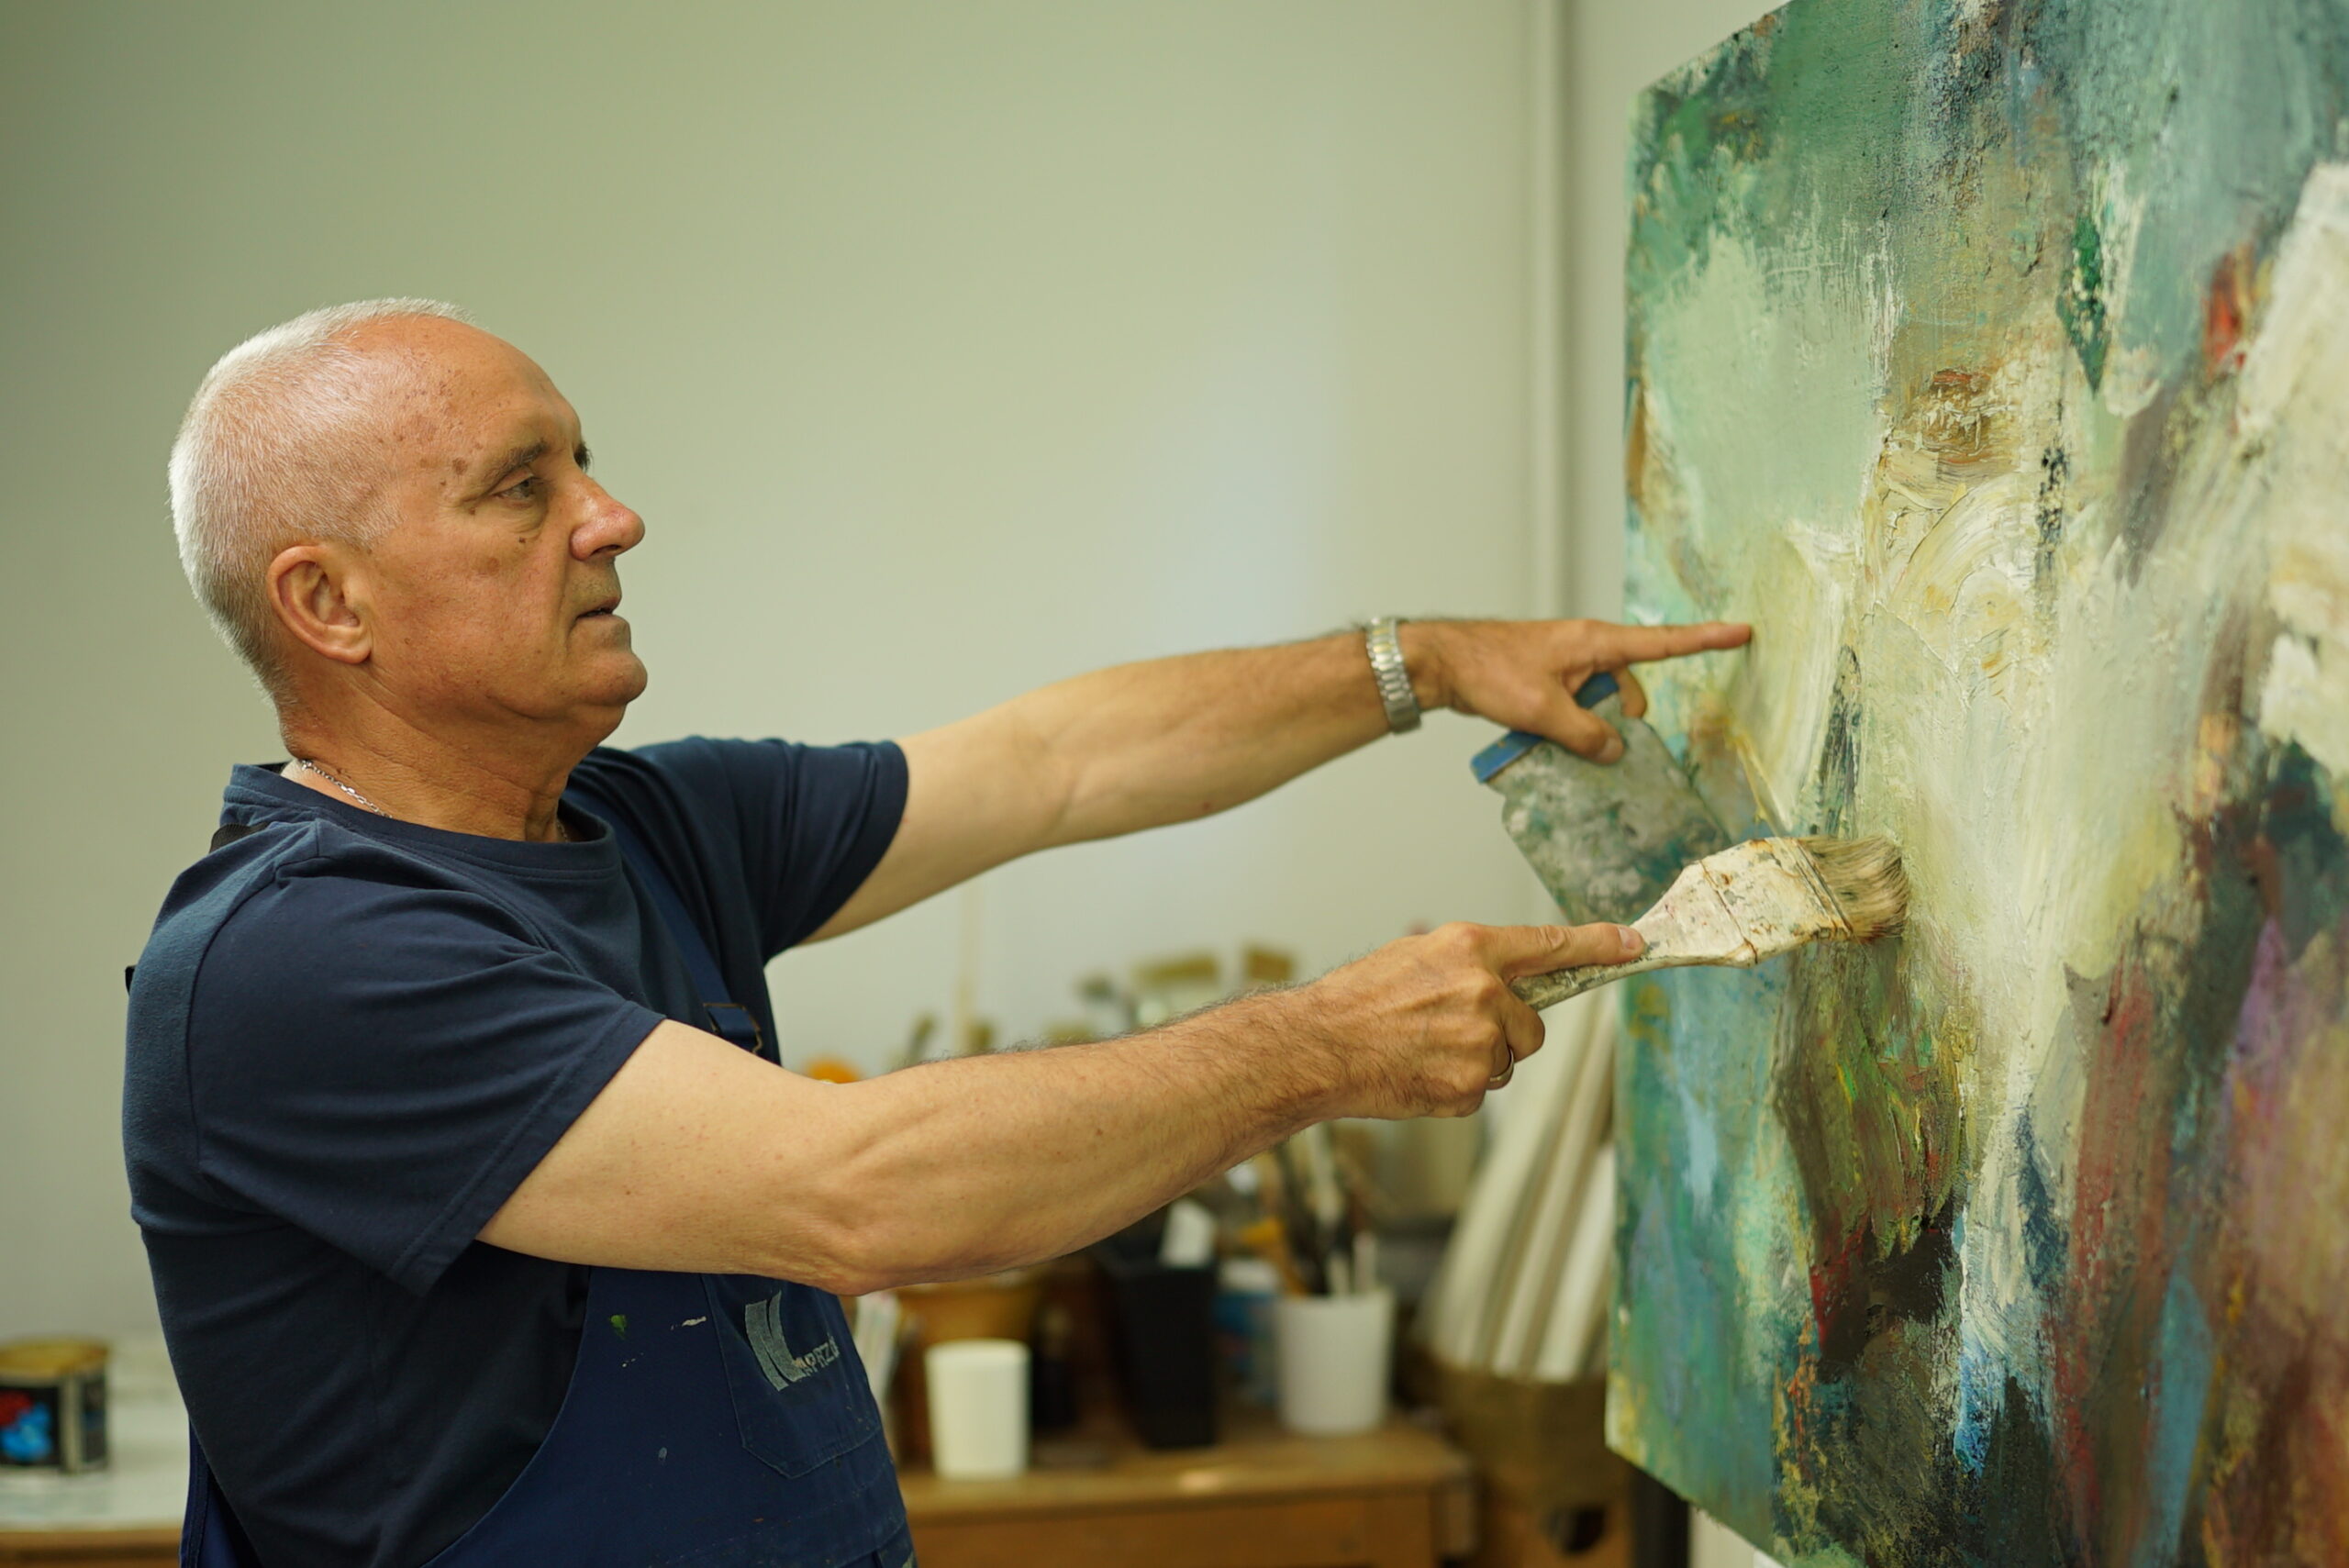 Na zdjęciu Artysta Ryszard Pasikowski, Który tworzy właśnie swój obraz. Artysta ubrany w granatową koszulkę i fartuch widoczny od pasa w górę. Ma siwe krótkie włosy. Po prawej stronie jest malowany abstrakcyjny obraz w kolorach zieleni i błękitu.